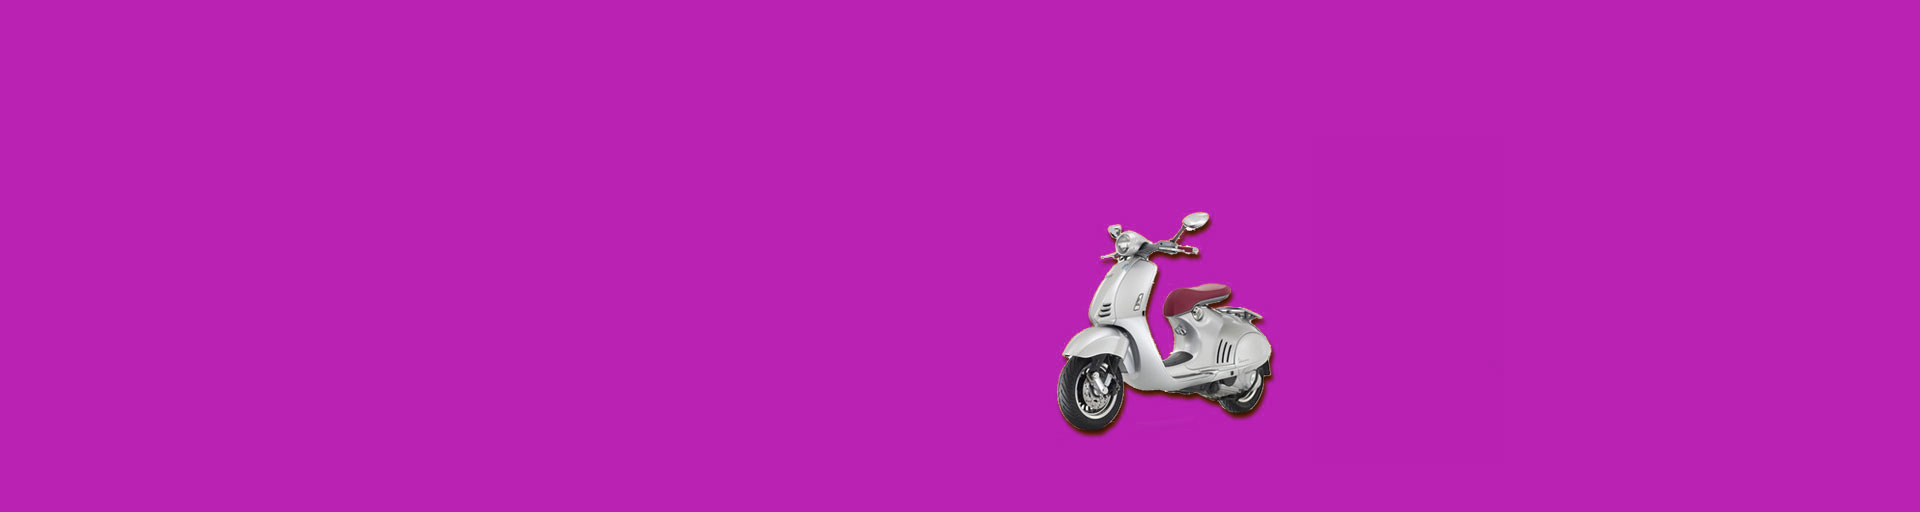 scooter verpanden